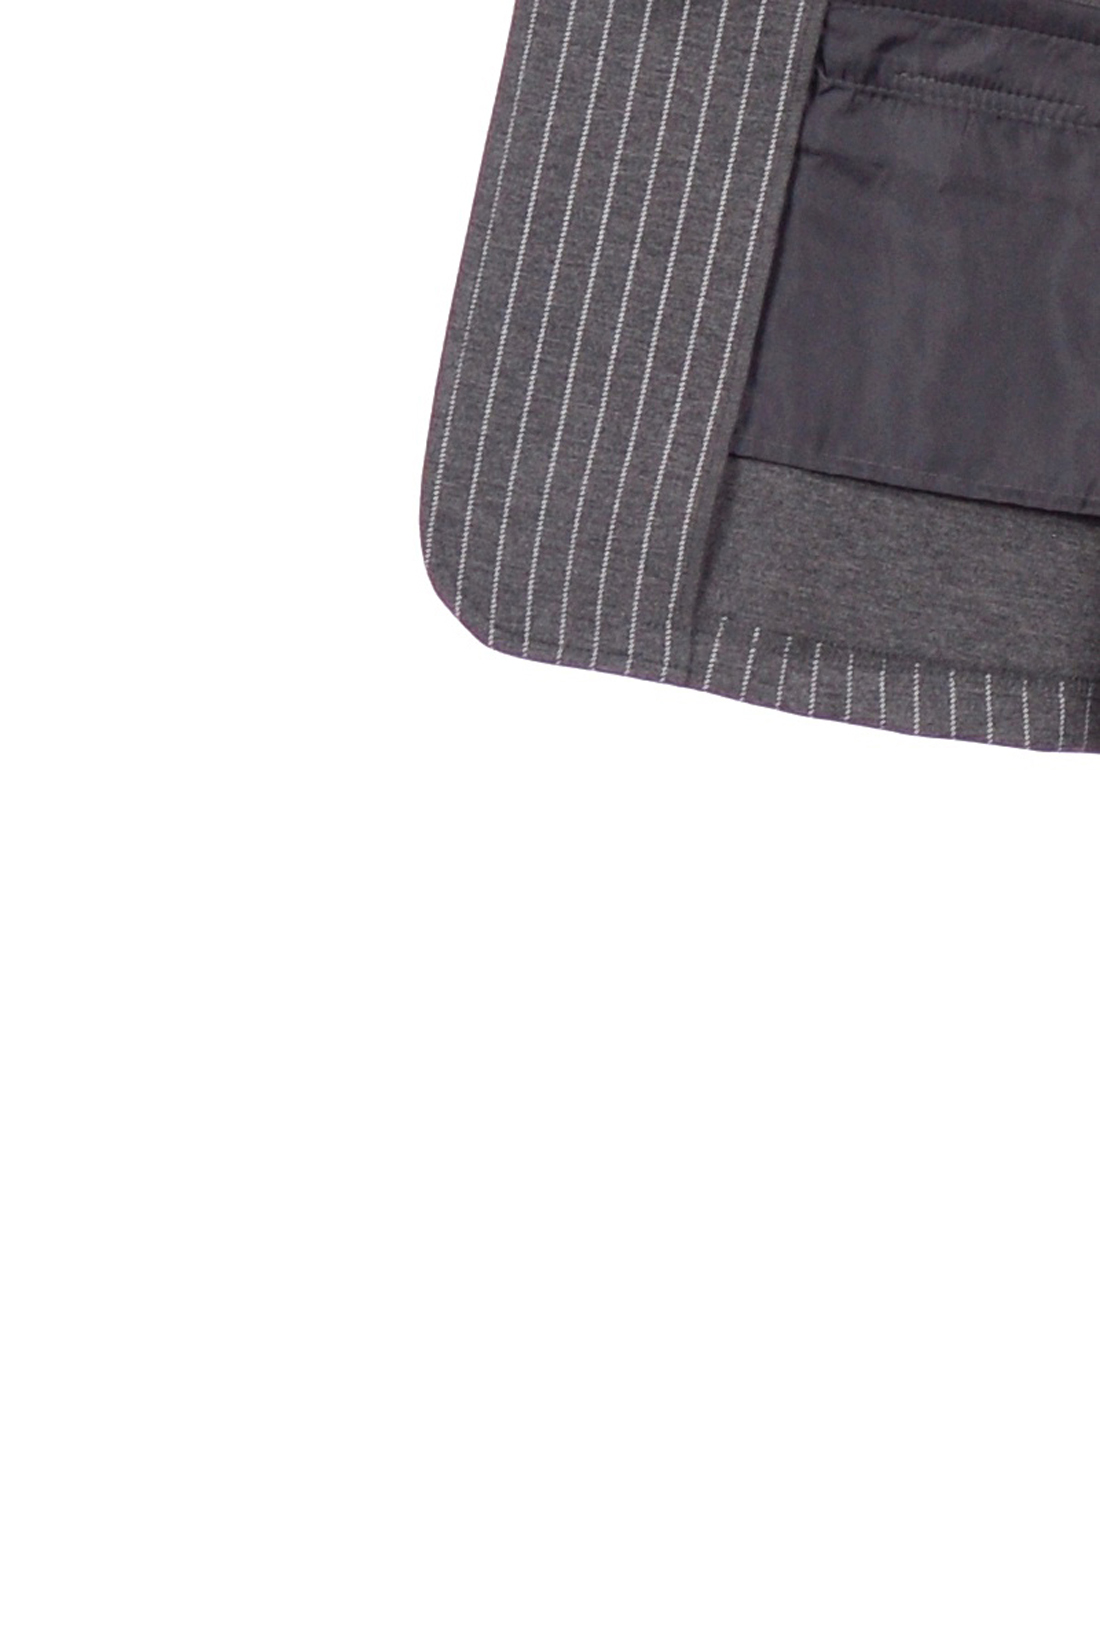 Жакет в серую полоску (арт. baon B129513), размер XXL, цвет grey striped#серый Жакет в серую полоску (арт. baon B129513) - фото 2